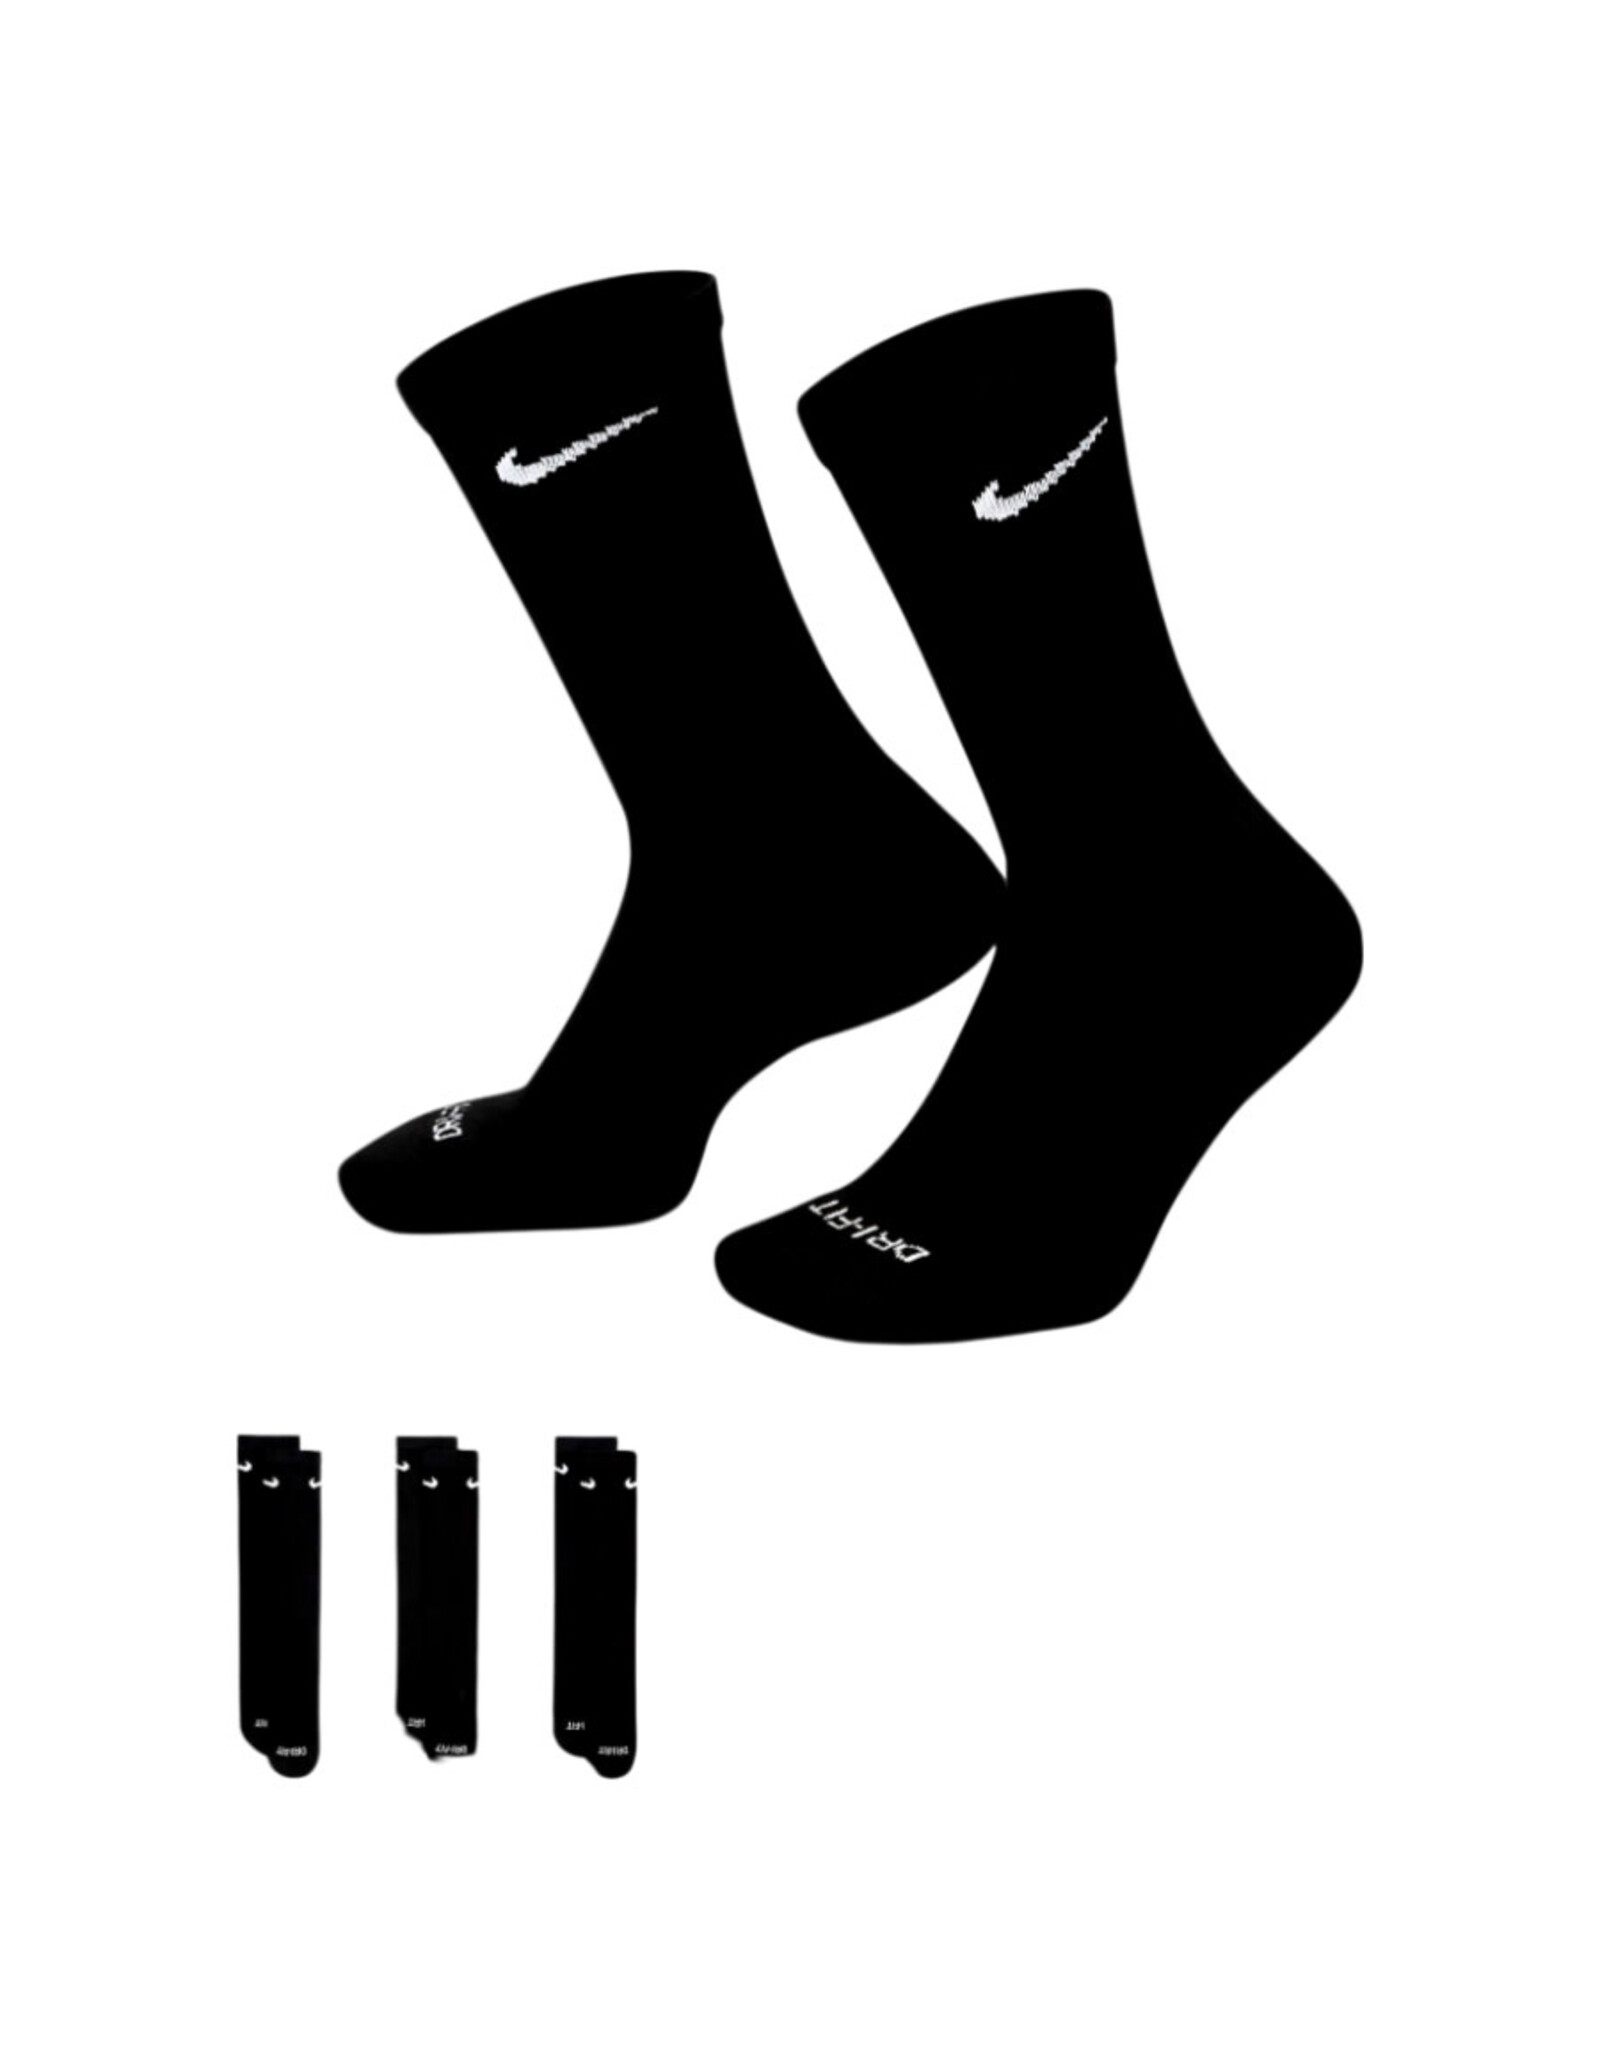 Nike SB Nike SB Socks Everyday Plus Cushioned Training Crew Black/White Large (3-Pack)